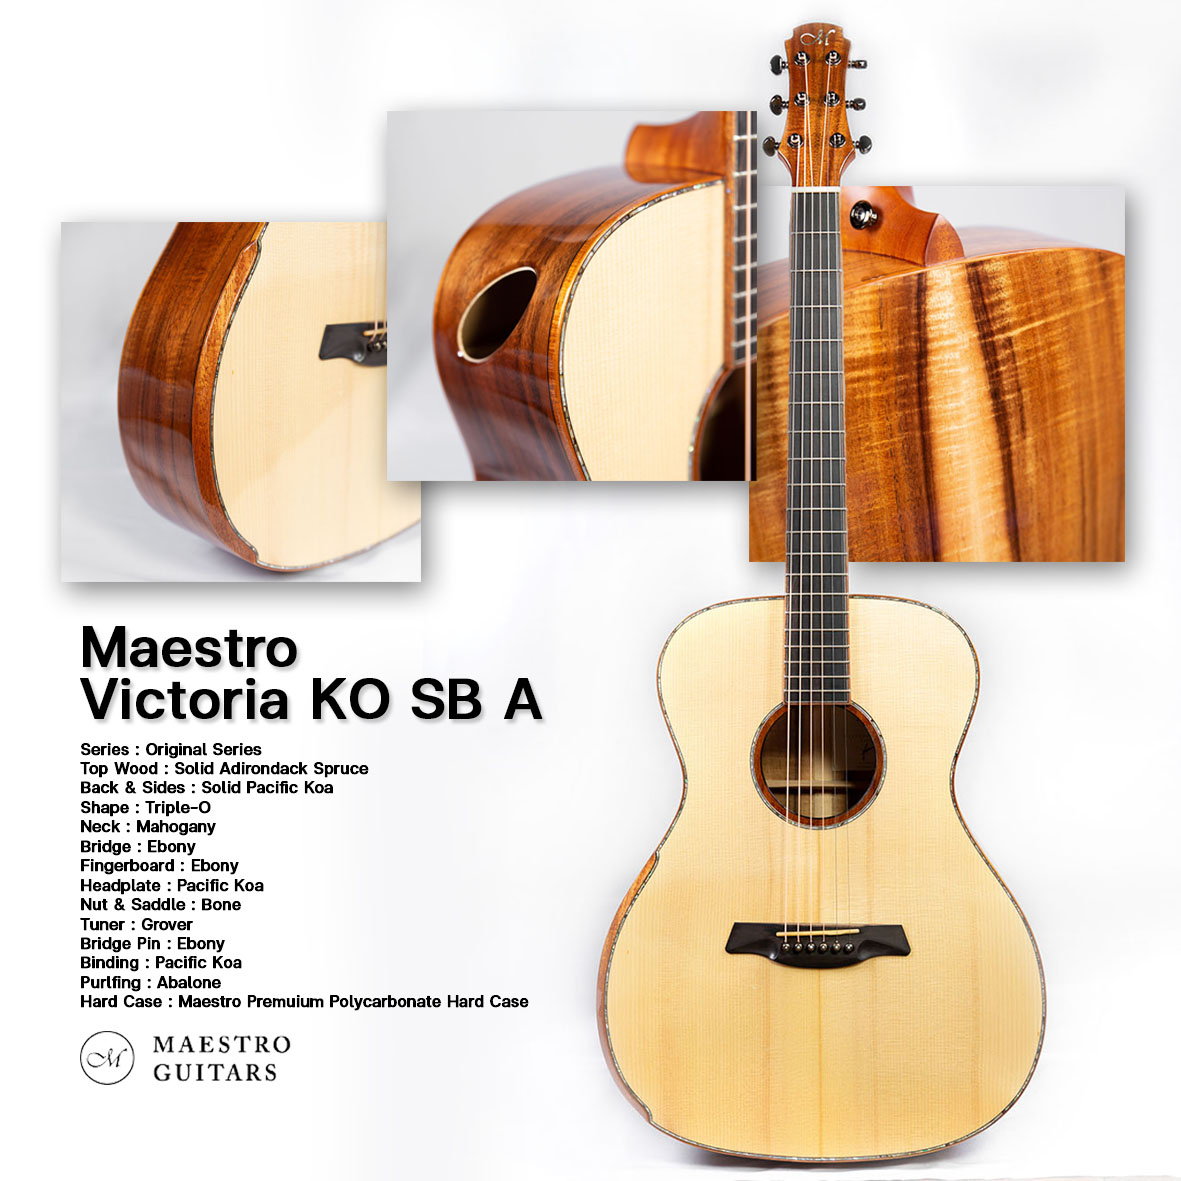 Maestro Victoria KO SB A